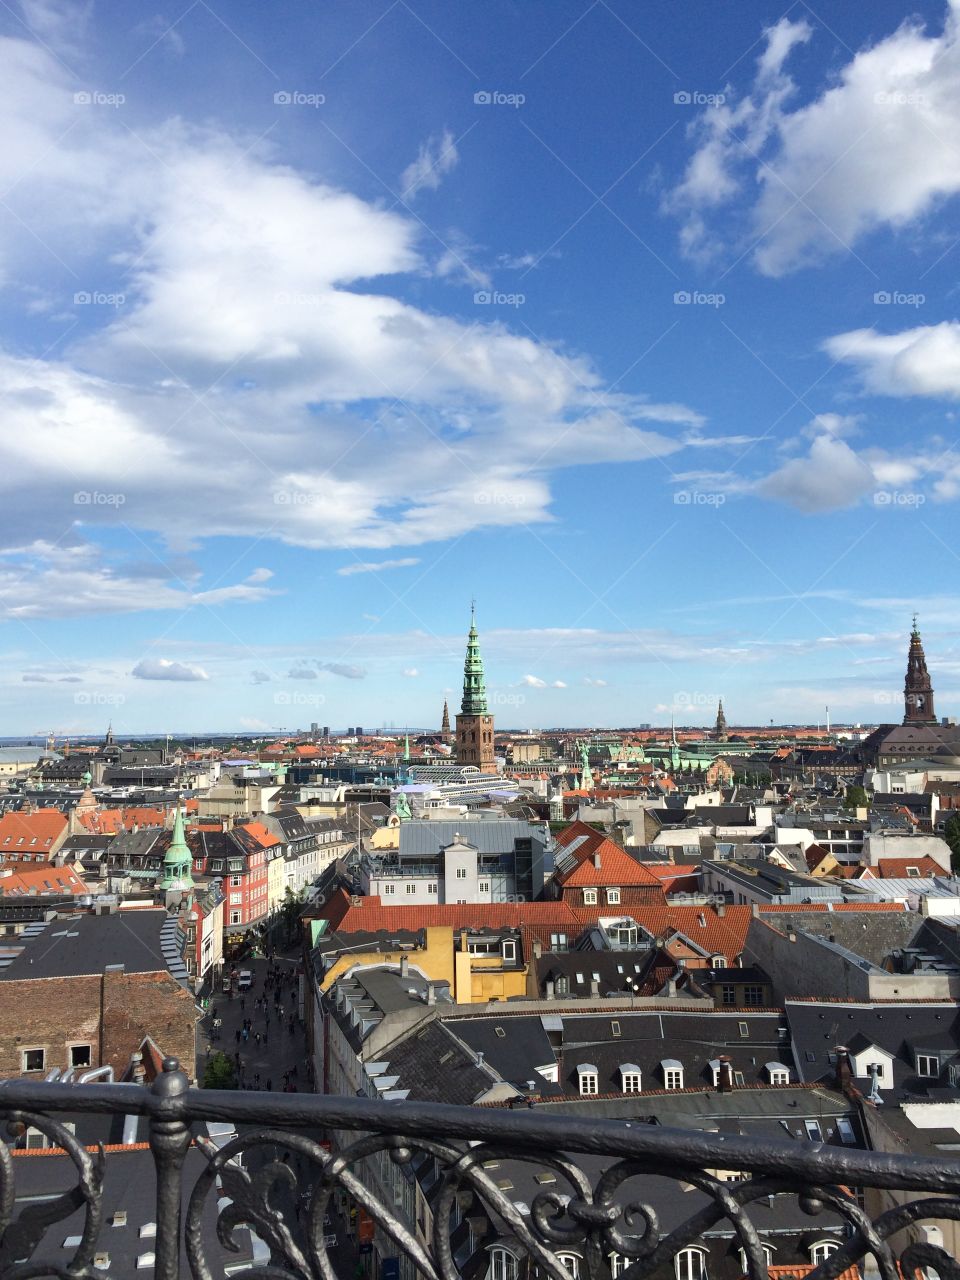 Round Tower- Copenhagen, Denmark